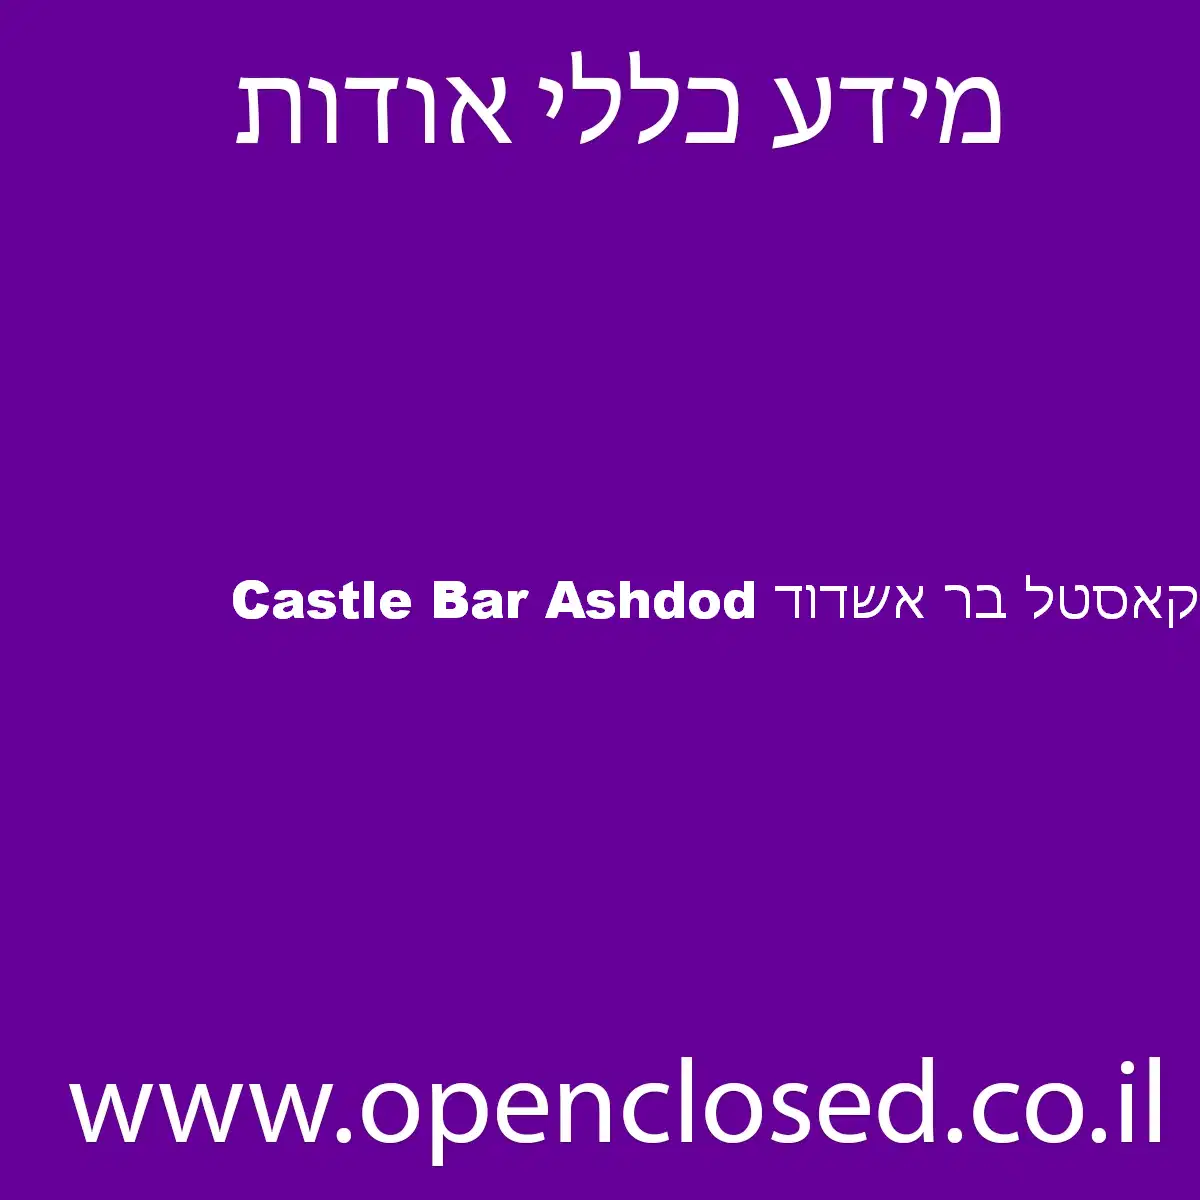 Castle Bar Ashdod קאסטל בר אשדוד